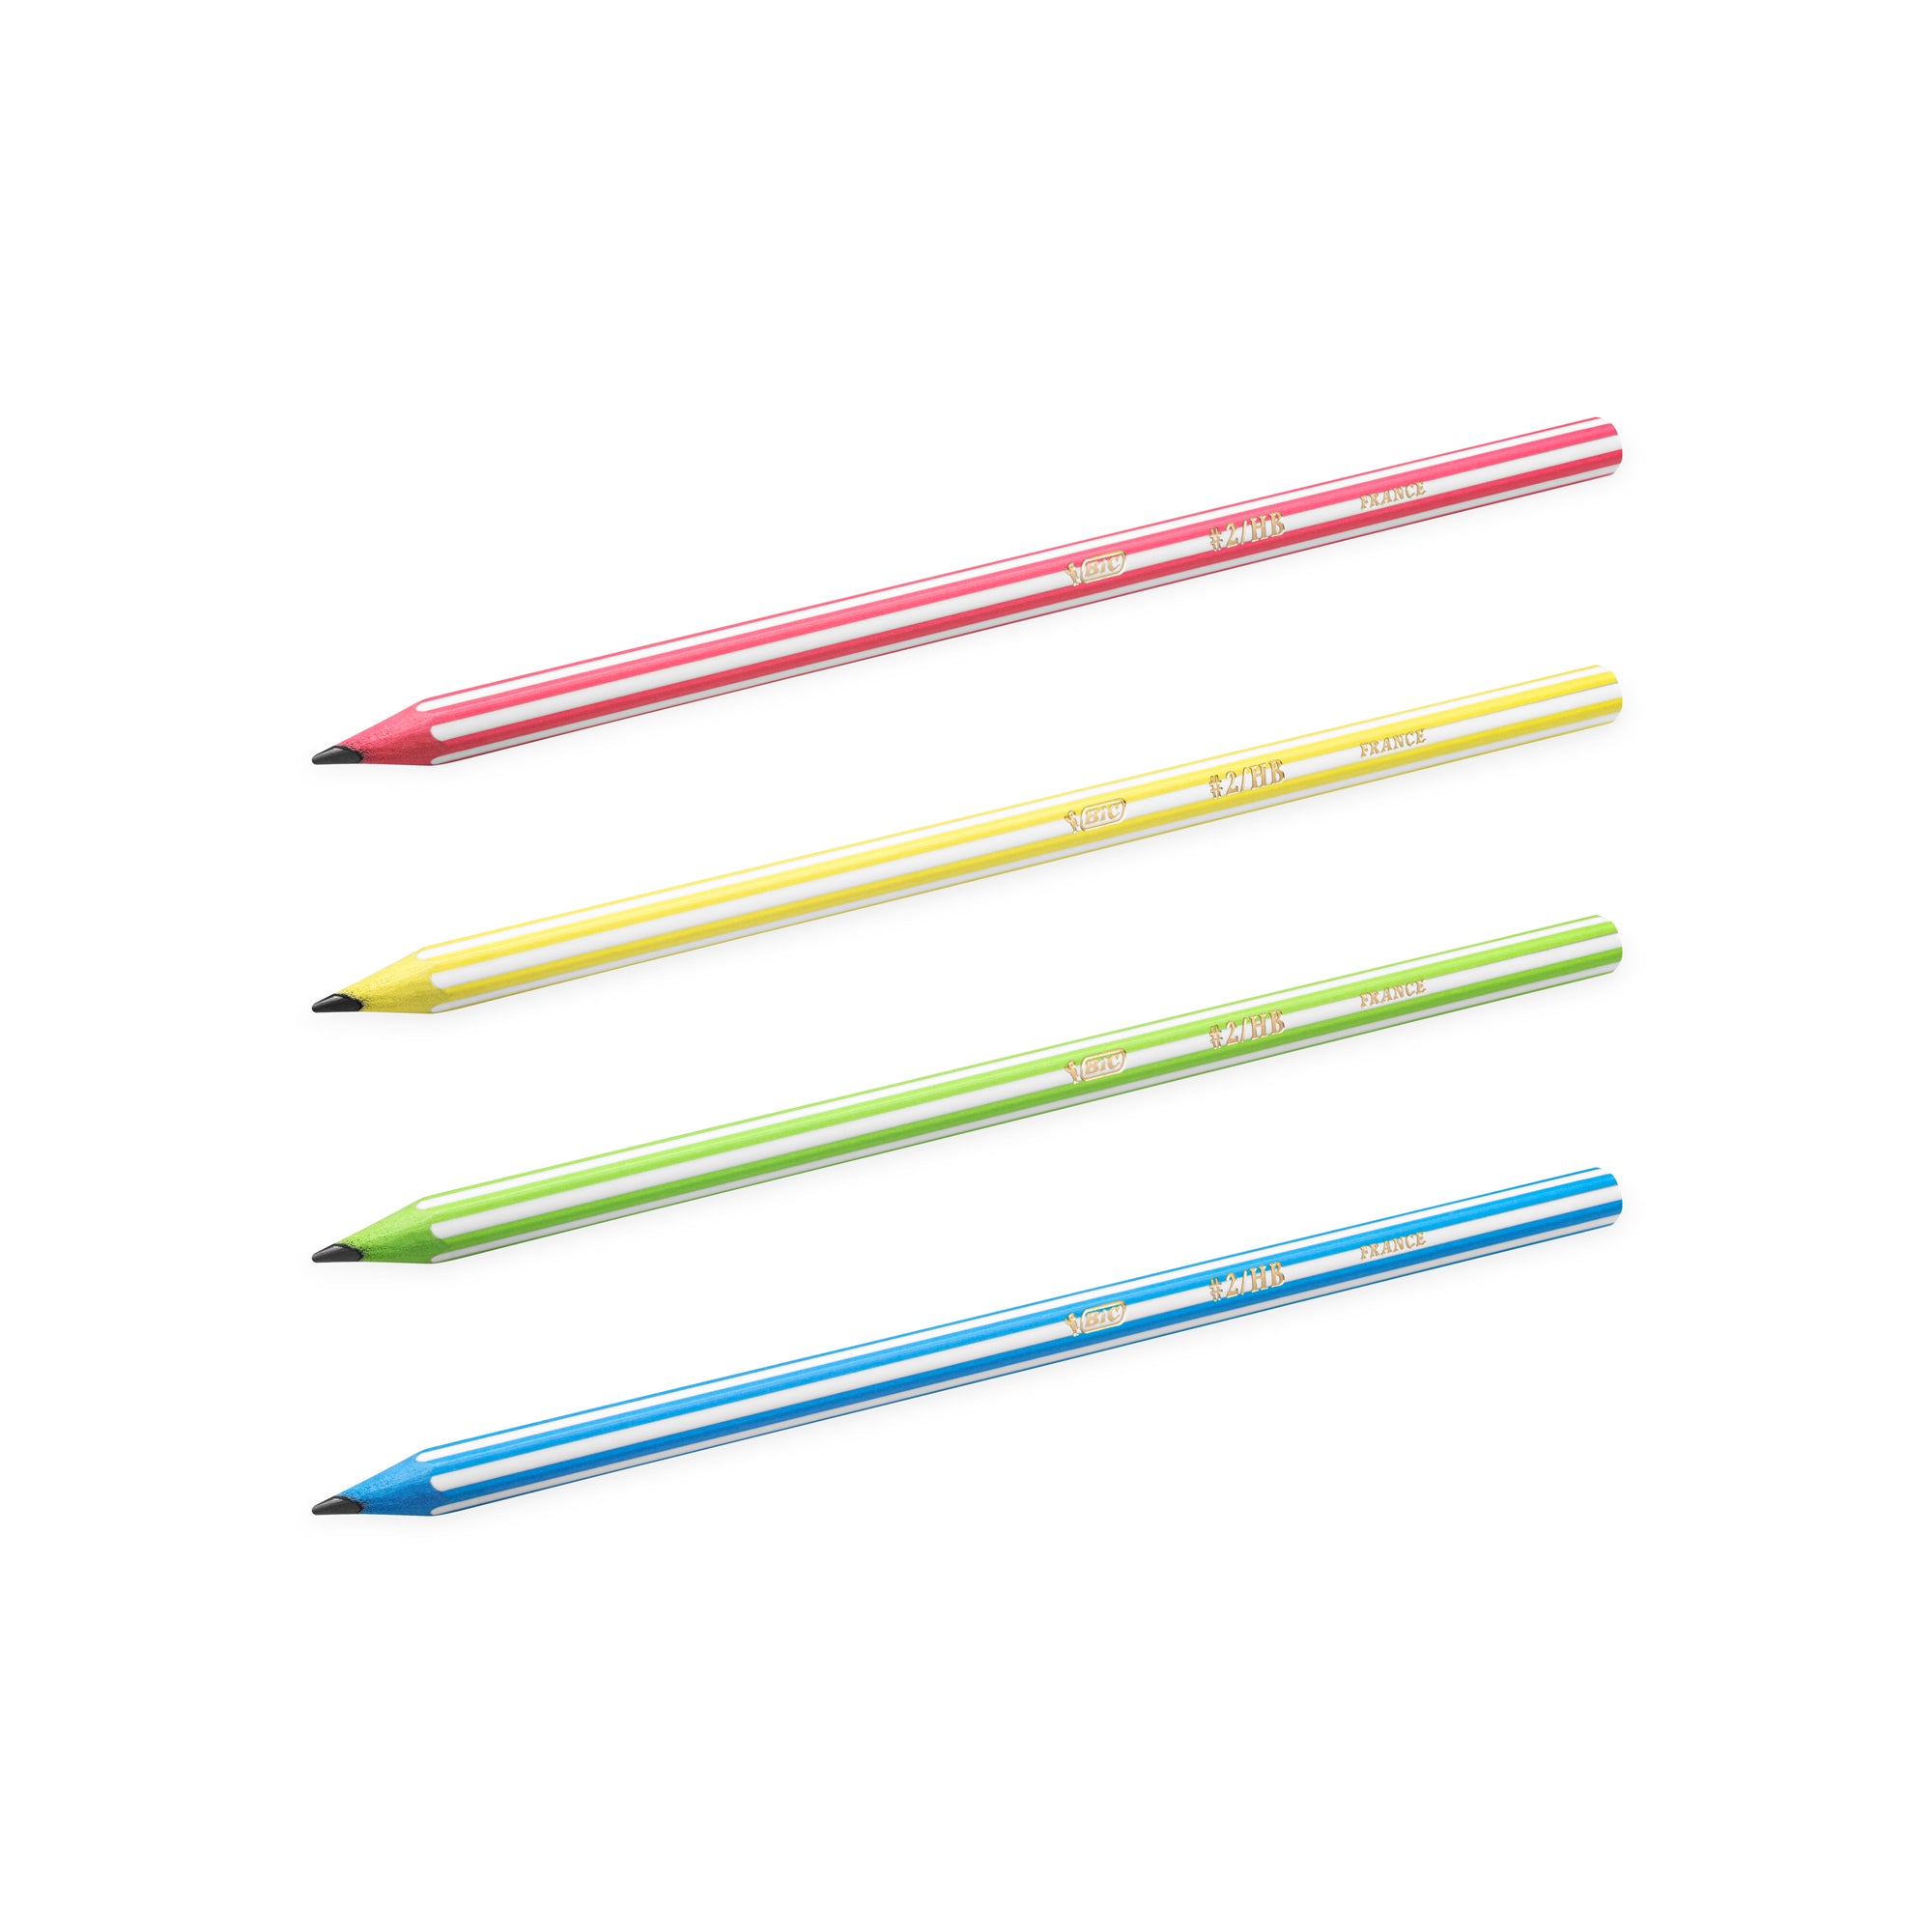 bic-scatola-12-matite-evolution-stripes